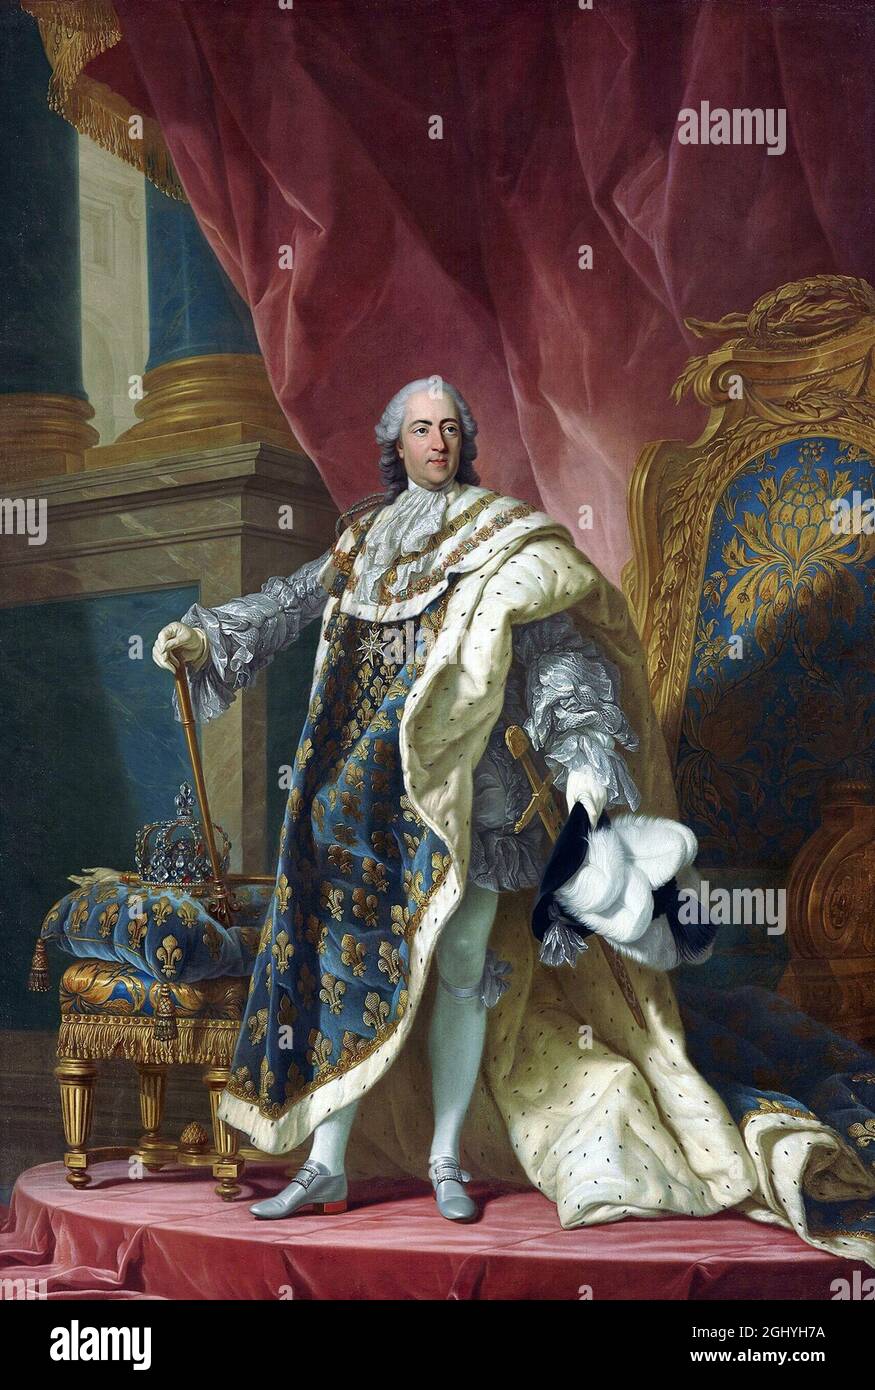 Un ritratto di Re Luigi XV che fu il Re di Francia dal 1715 al 1774. Era anche conosciuto come Luigi l'amato Foto Stock